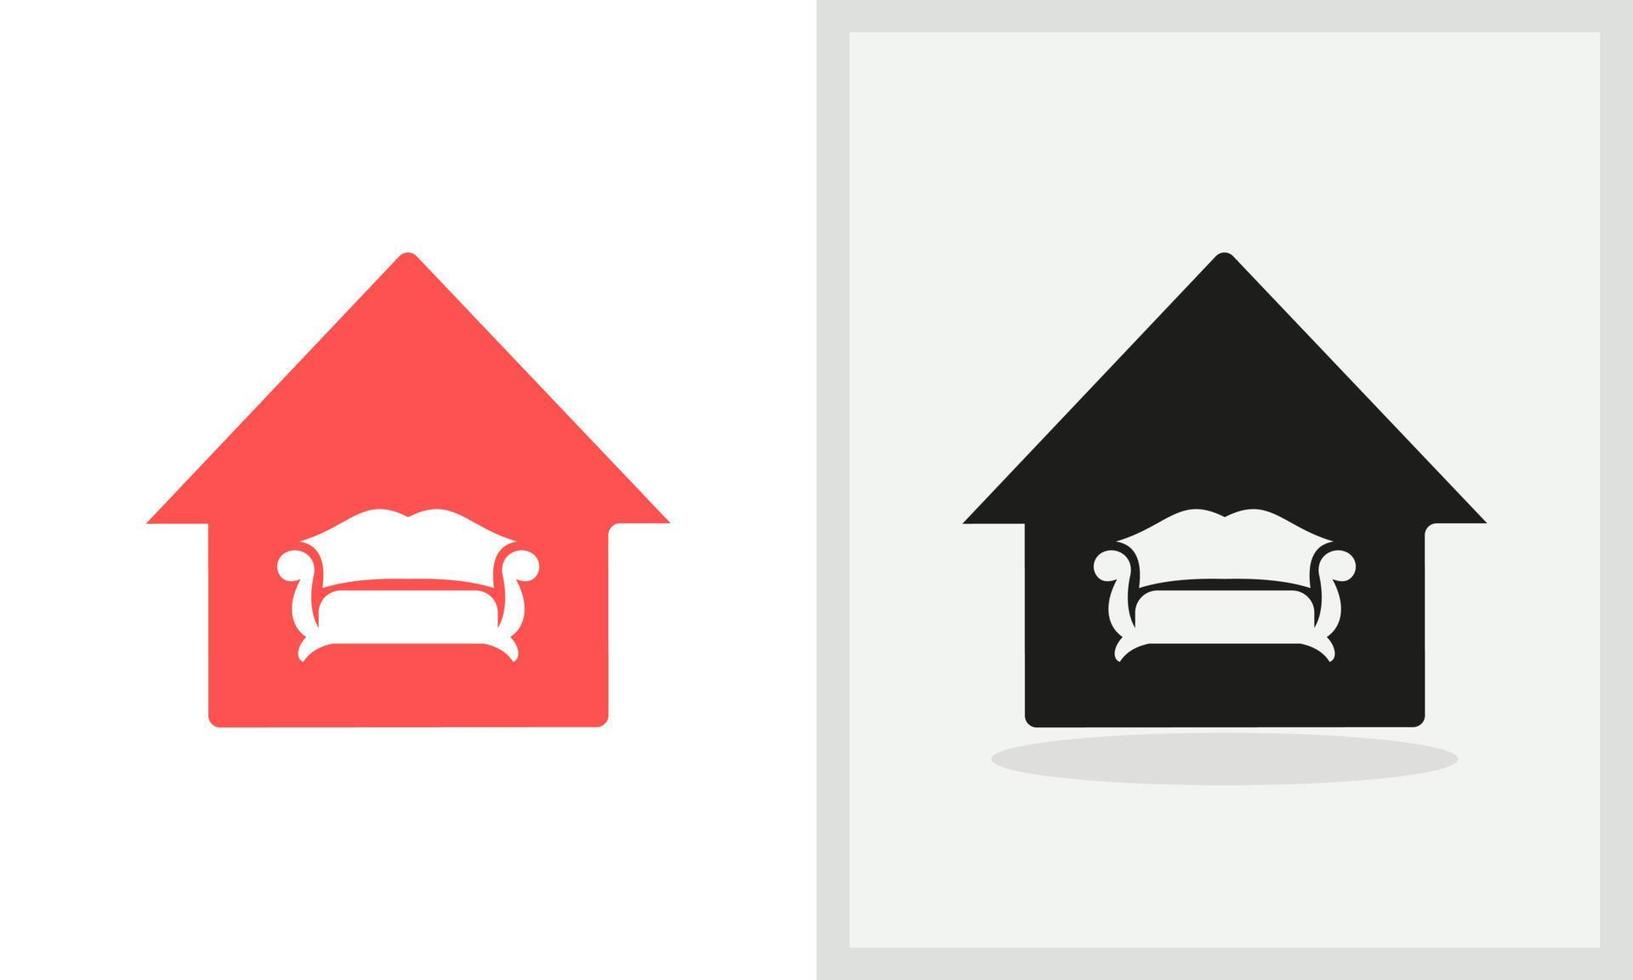 Sofa House logo design. Home logo with Sofa concept vector. Sofa and Home logo design vector